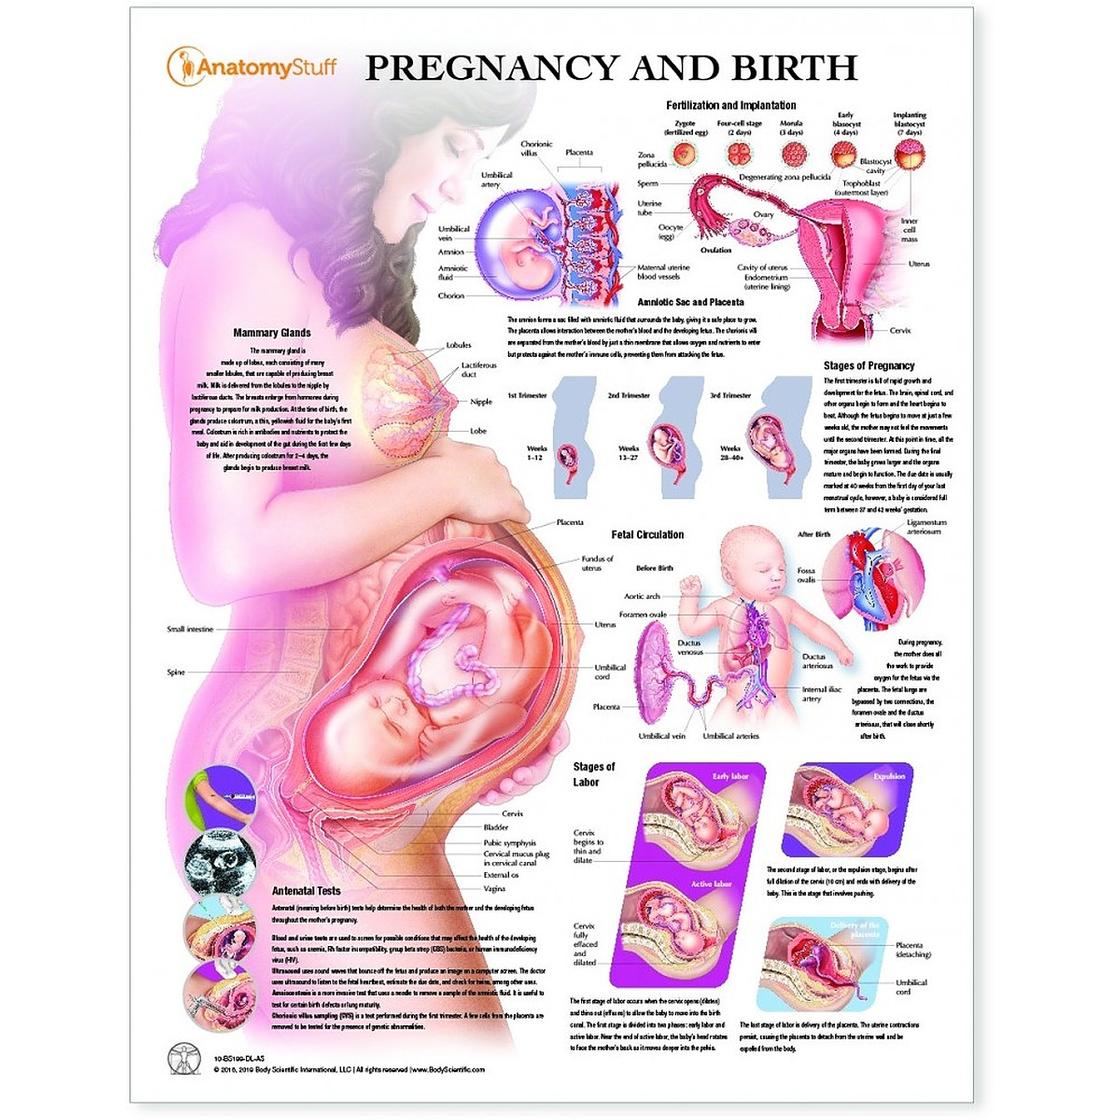 33 недели беременности можно. Положение ребенка в животе на 33 неделе беременности. Плод в животе матери схема. Положение органов на 32 неделе беременности. Эмбрион 34 недели беременности вес плода.